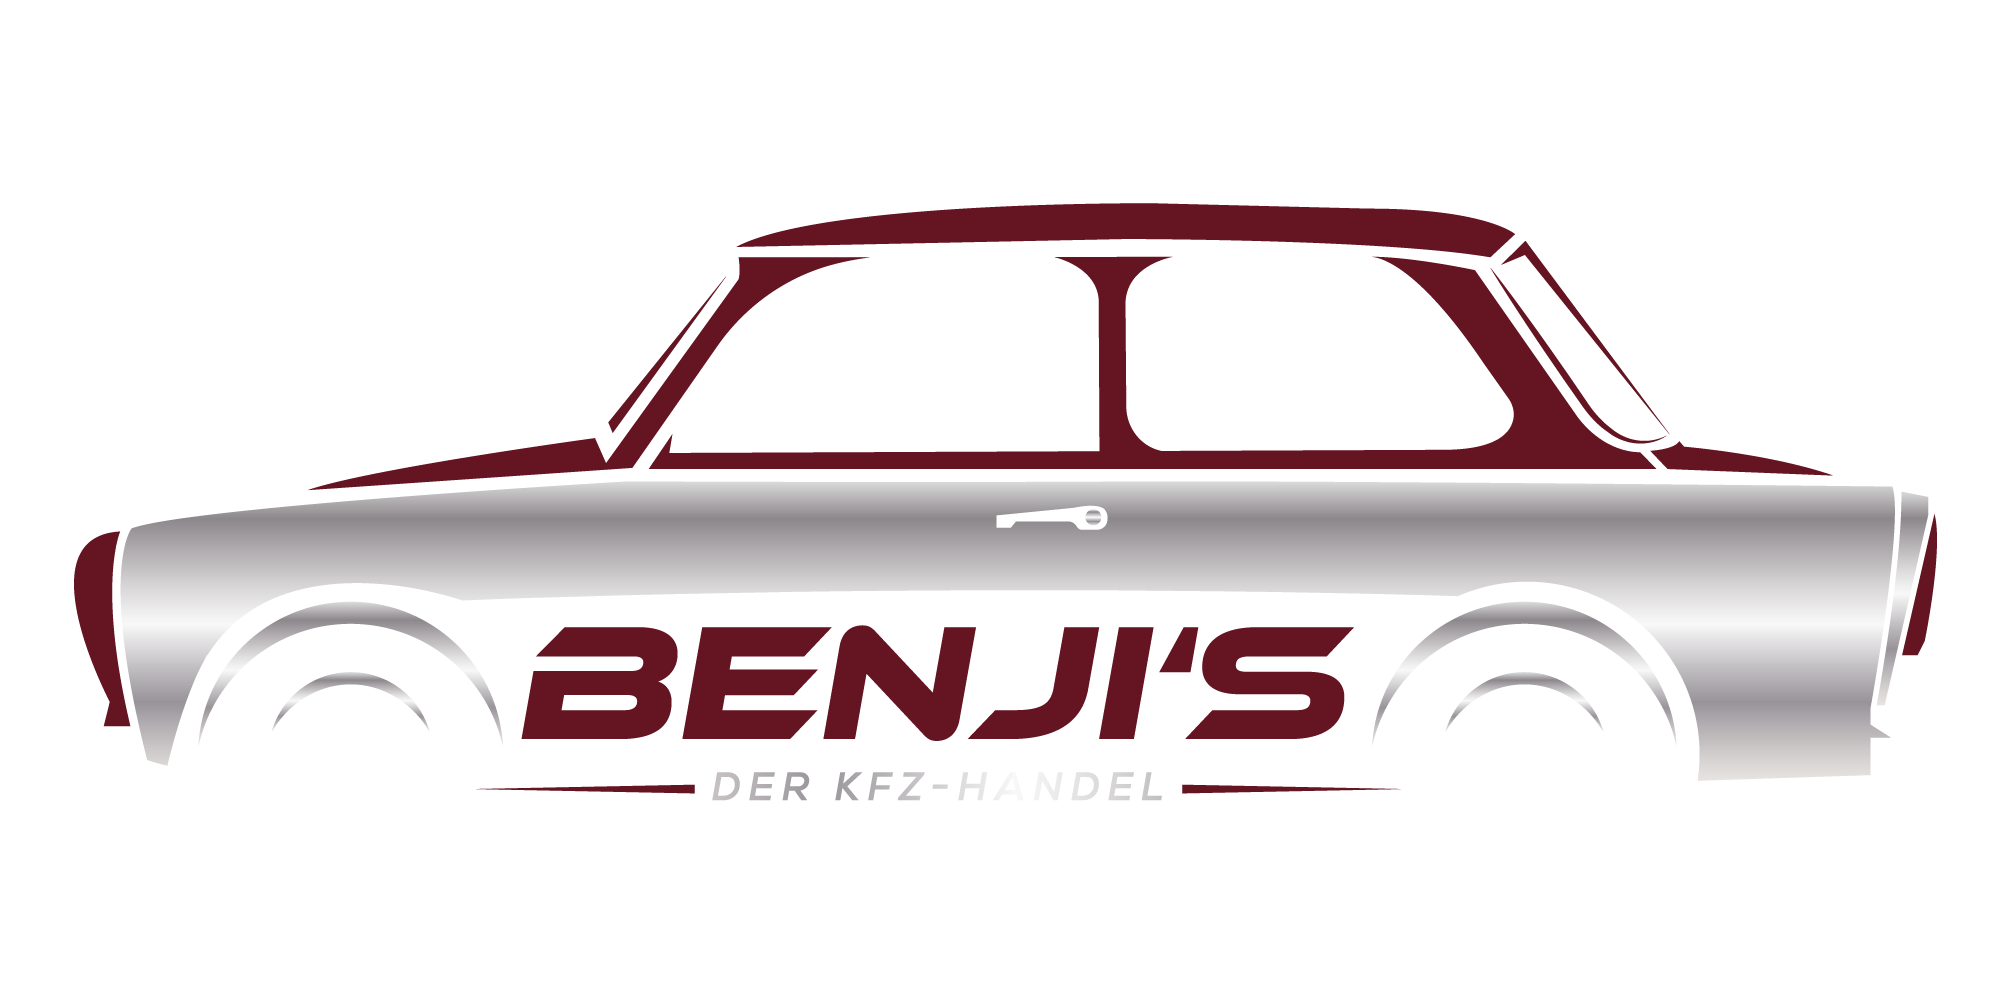 Benji's - Der KFZ-Handel e.U.